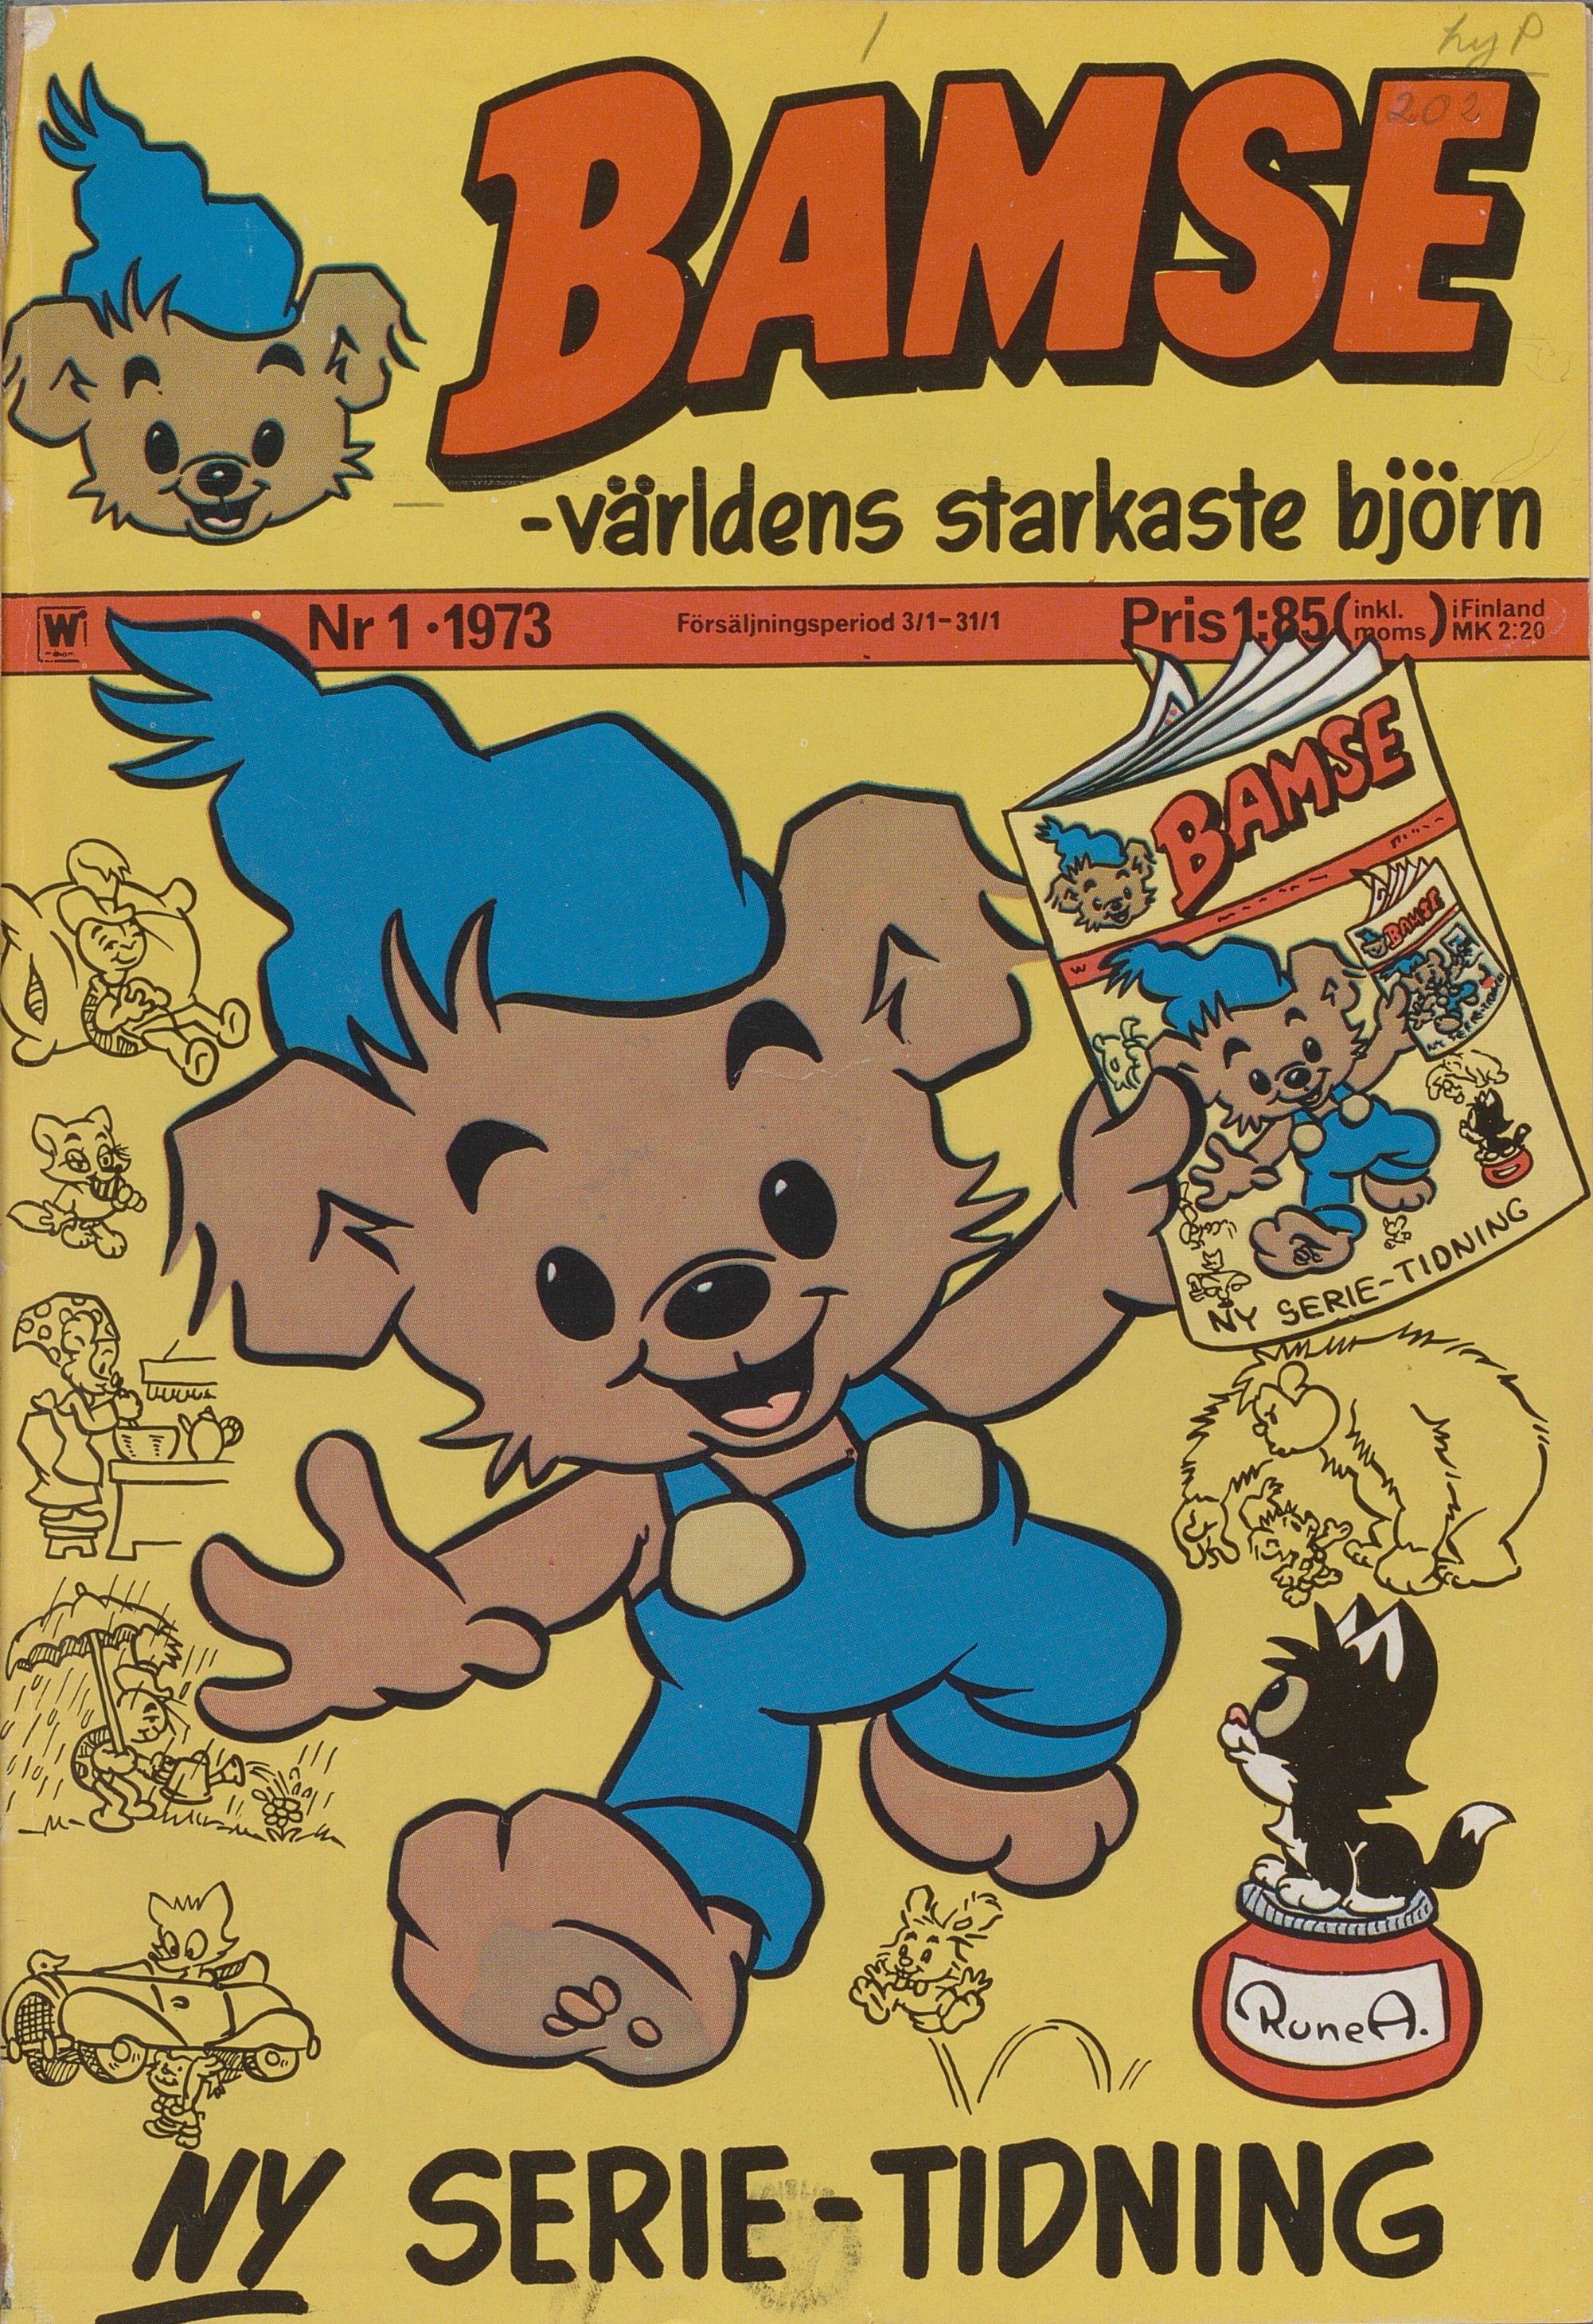 Serietidning med text: Bamse världens starkaste björn. Björn i blå byxor, hängslen, gula knappar och blå toppluva håller i tidning med samma bild på.